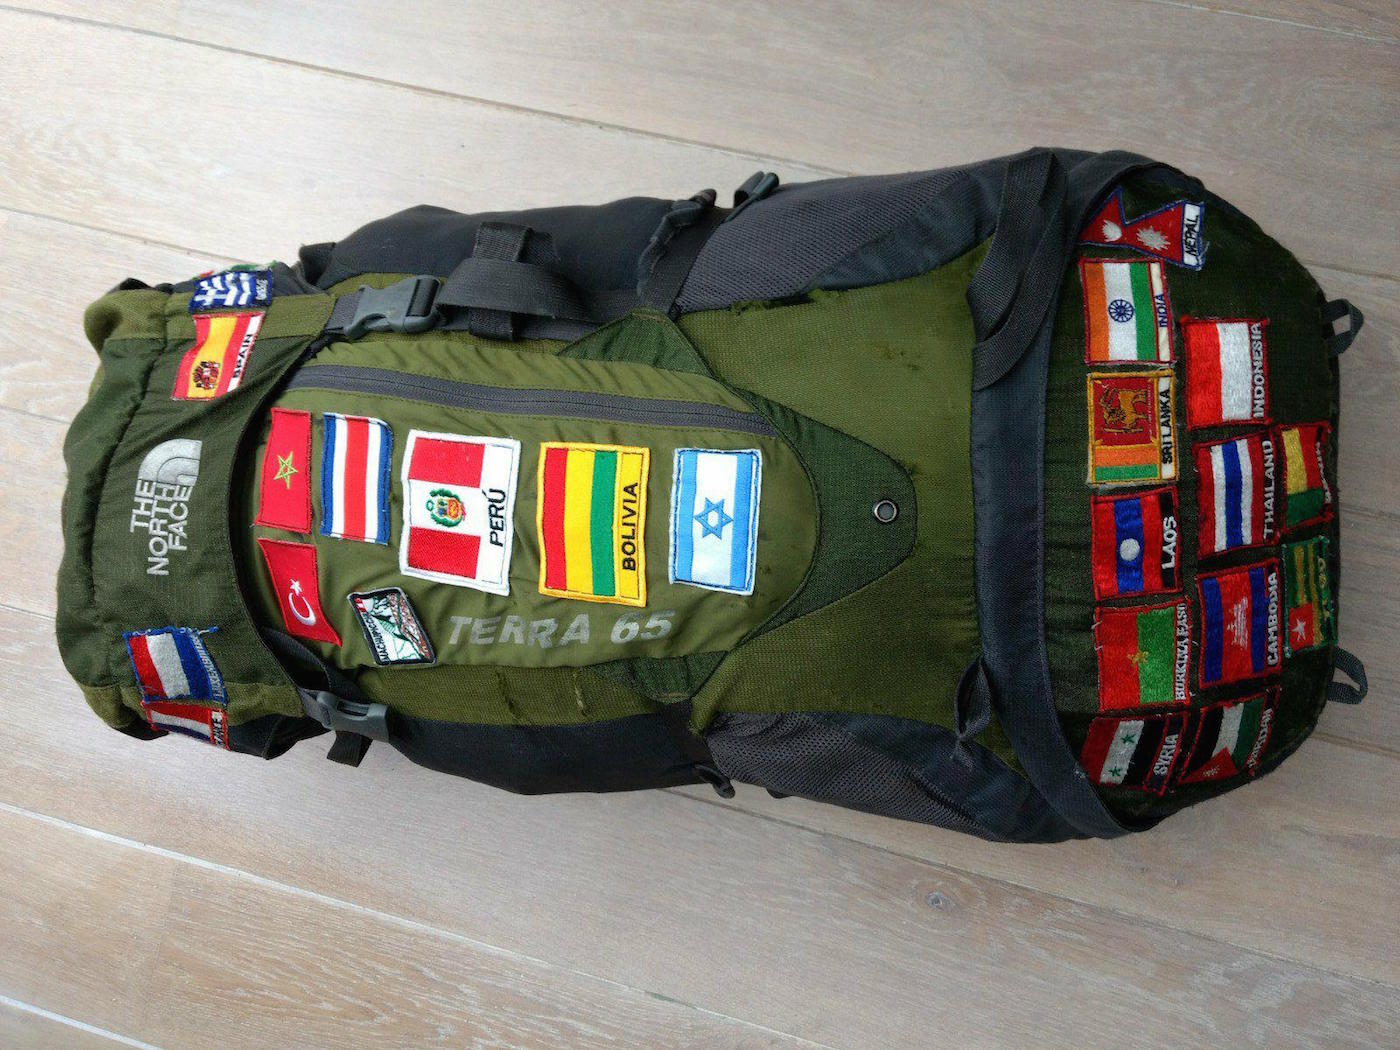 North Face Backpack van Linda backpack vlaggen